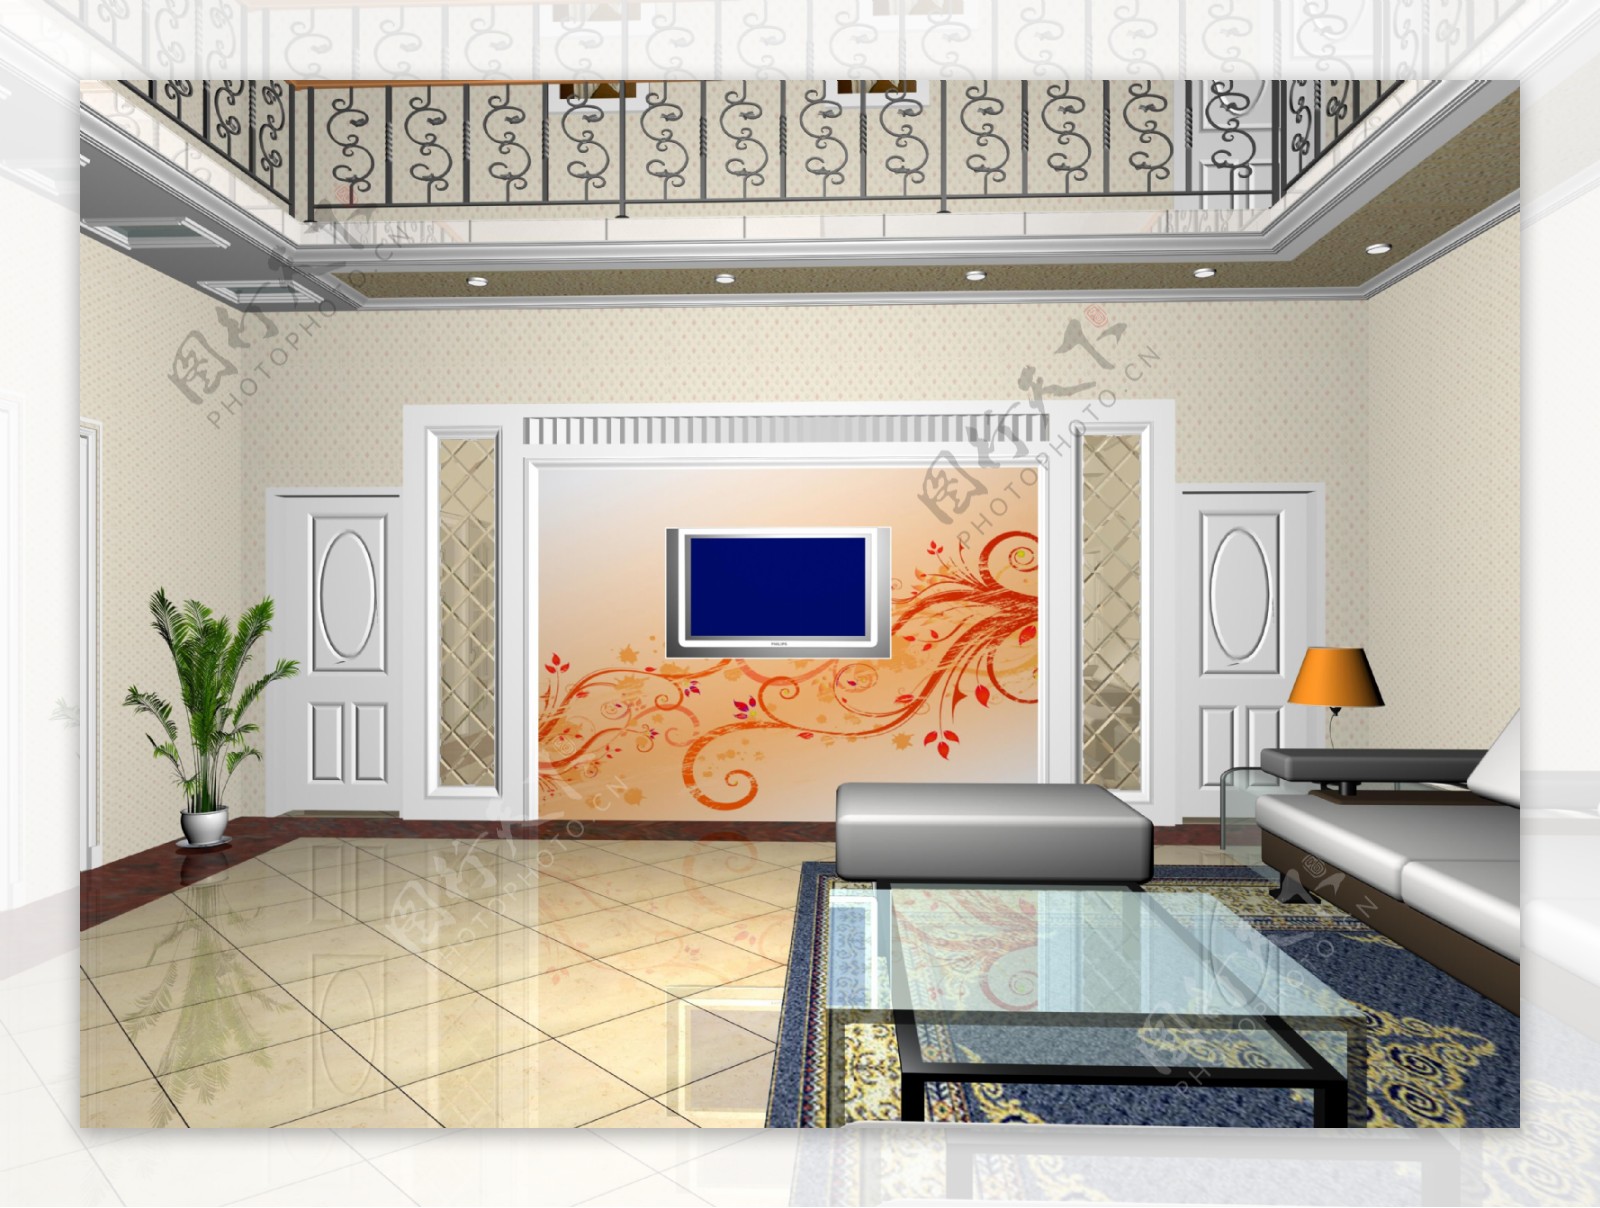 中式客厅影视墙图集推荐 – 设计本装修效果图